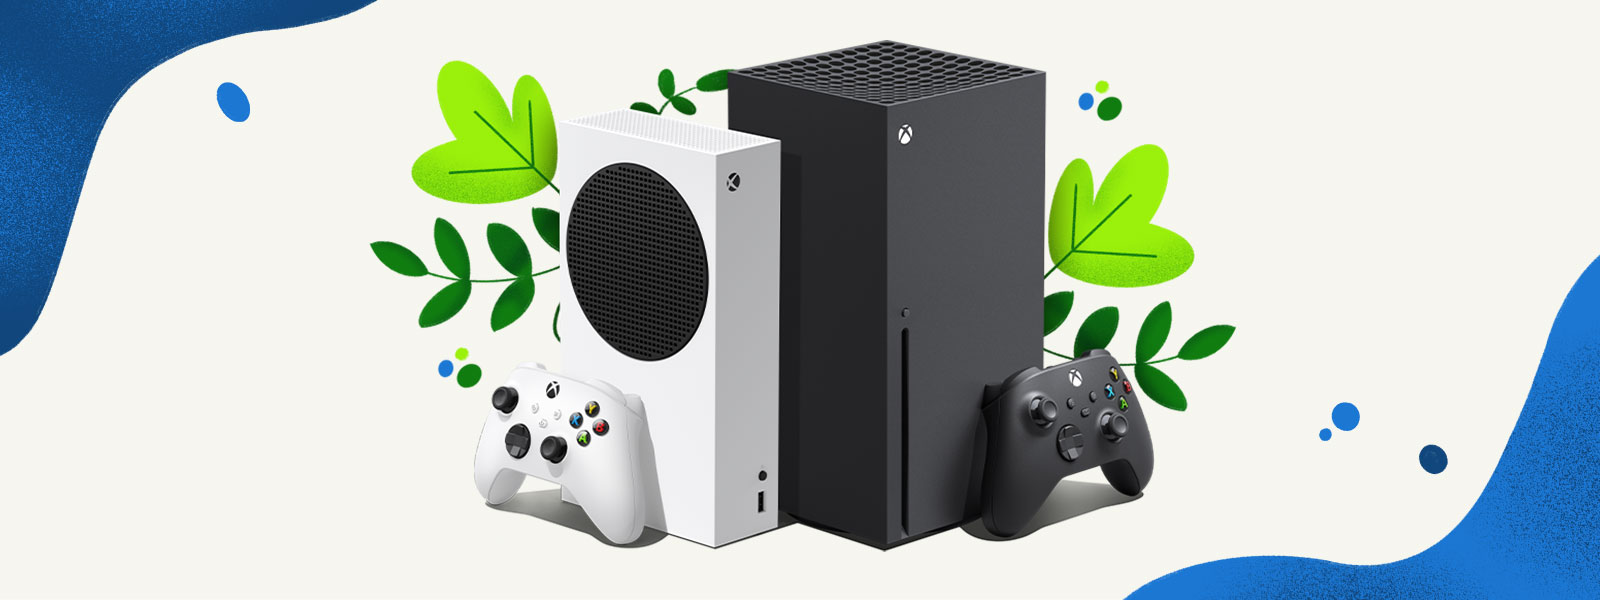 Las consolas Xbox Series X y Xbox Series S se encuentran una junto a la otra frente a un fondo decorativo de plantas y salpicaduras de agua azul.